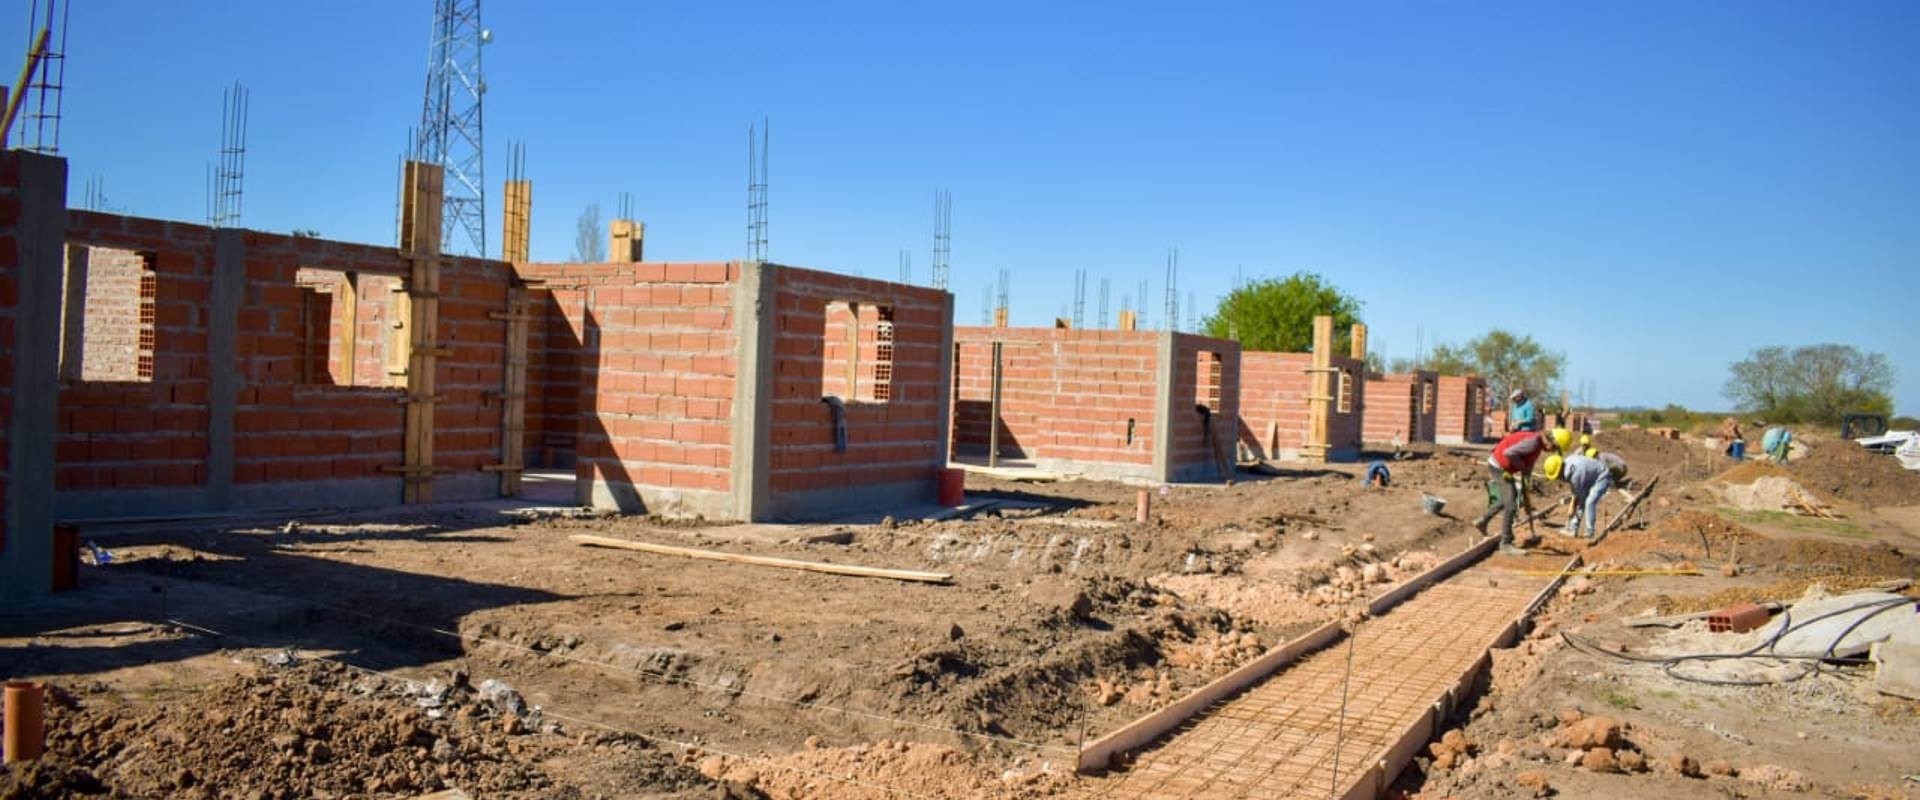 Comenzaron a construirse 27 nuevas viviendas con fondos provinciales para Enrique Carbó y Colonia Ayuí